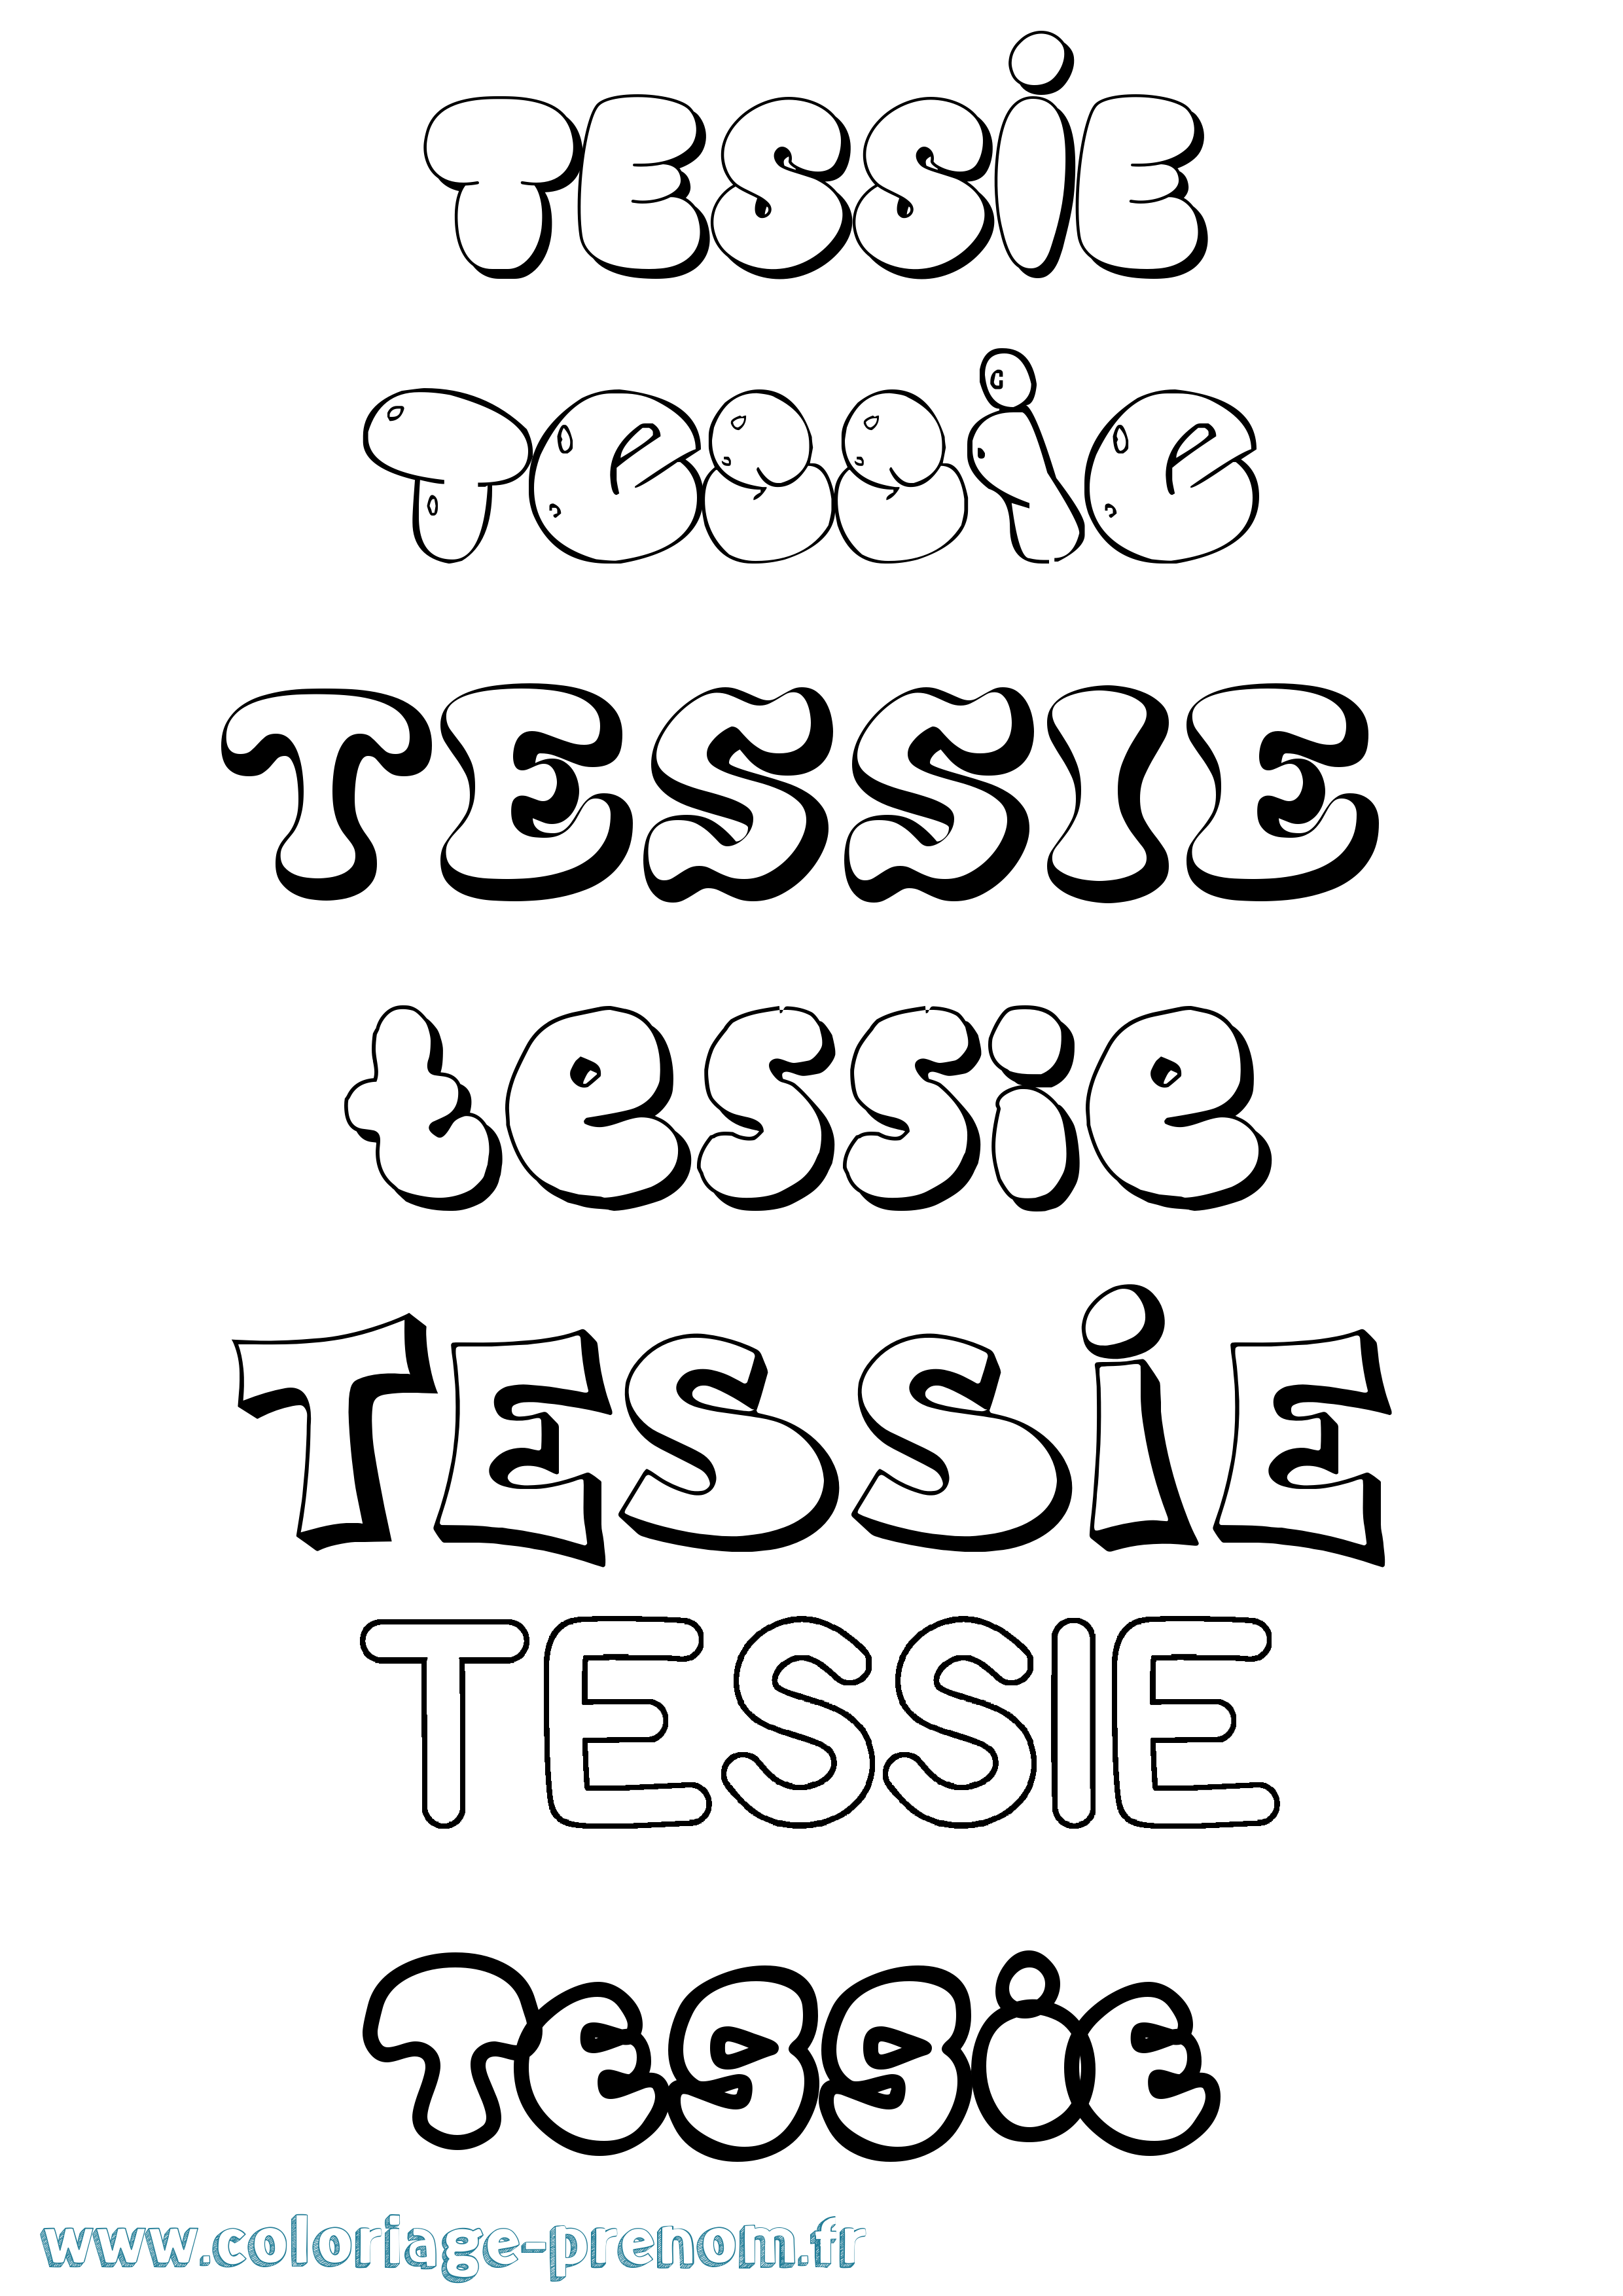 Coloriage prénom Tessie Bubble